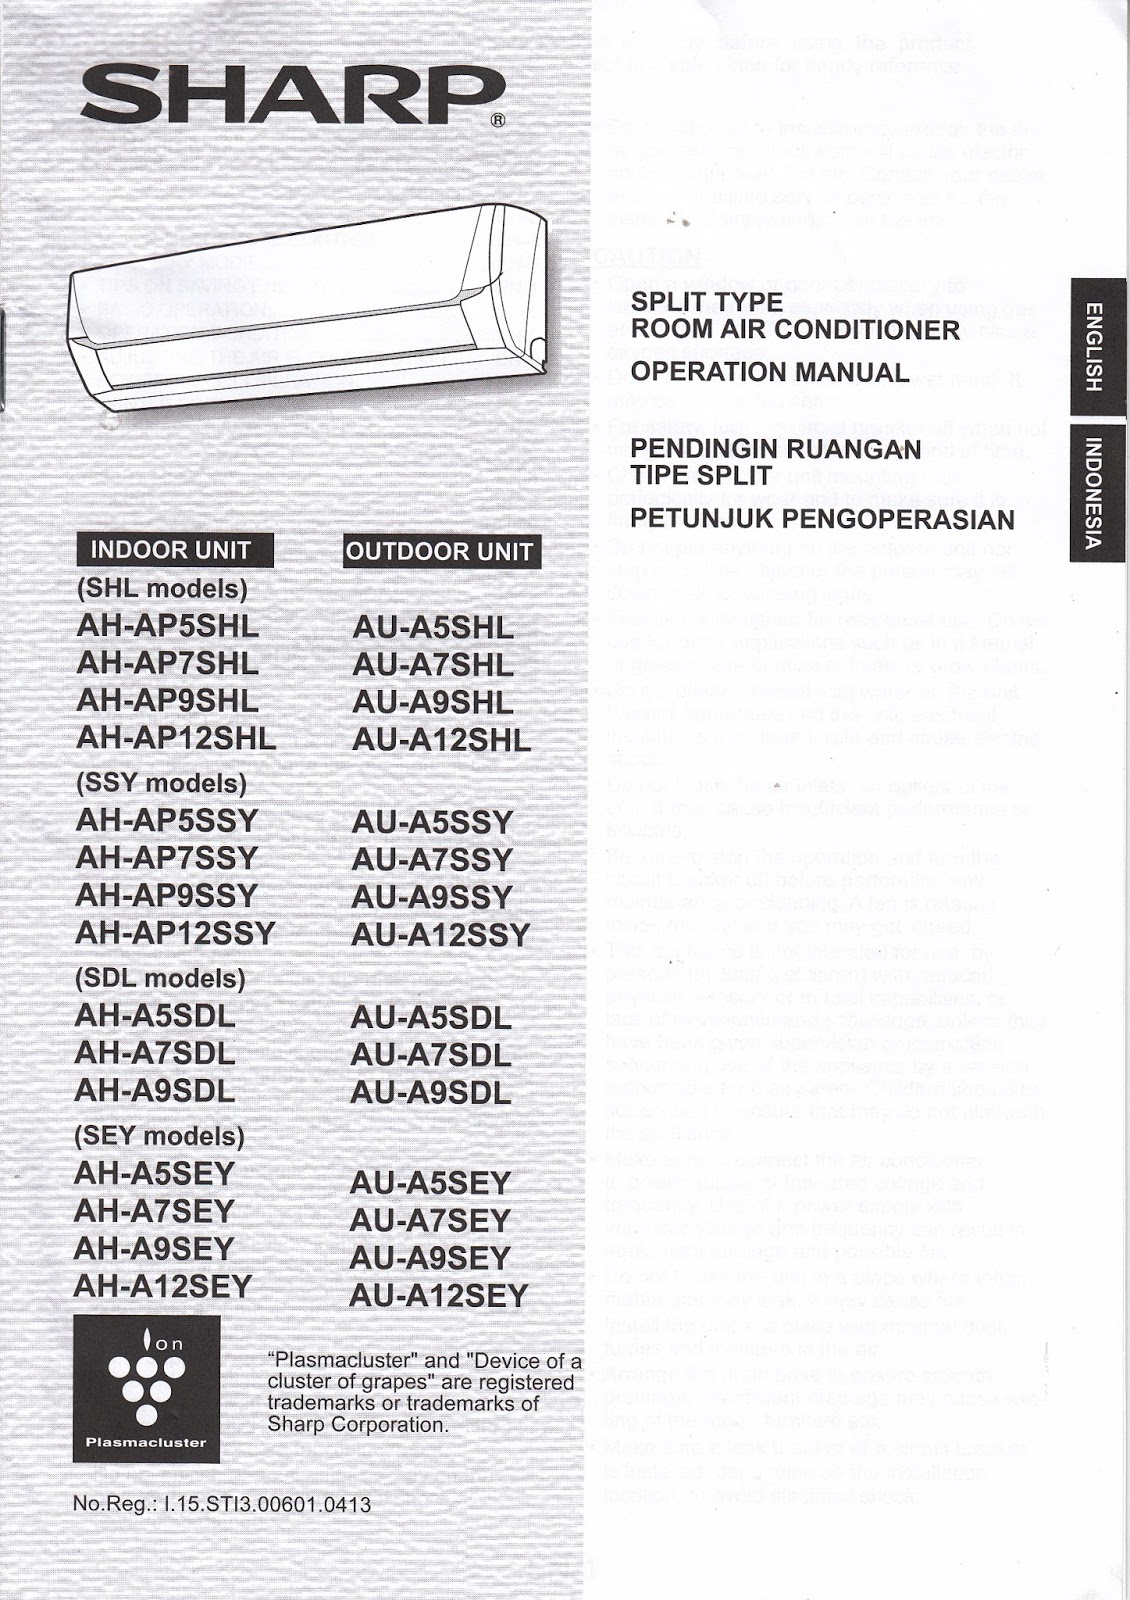 Manual Book : Petunjuk Penggunaan AC Sharp AH-A5SEY - Mambo Djumbo